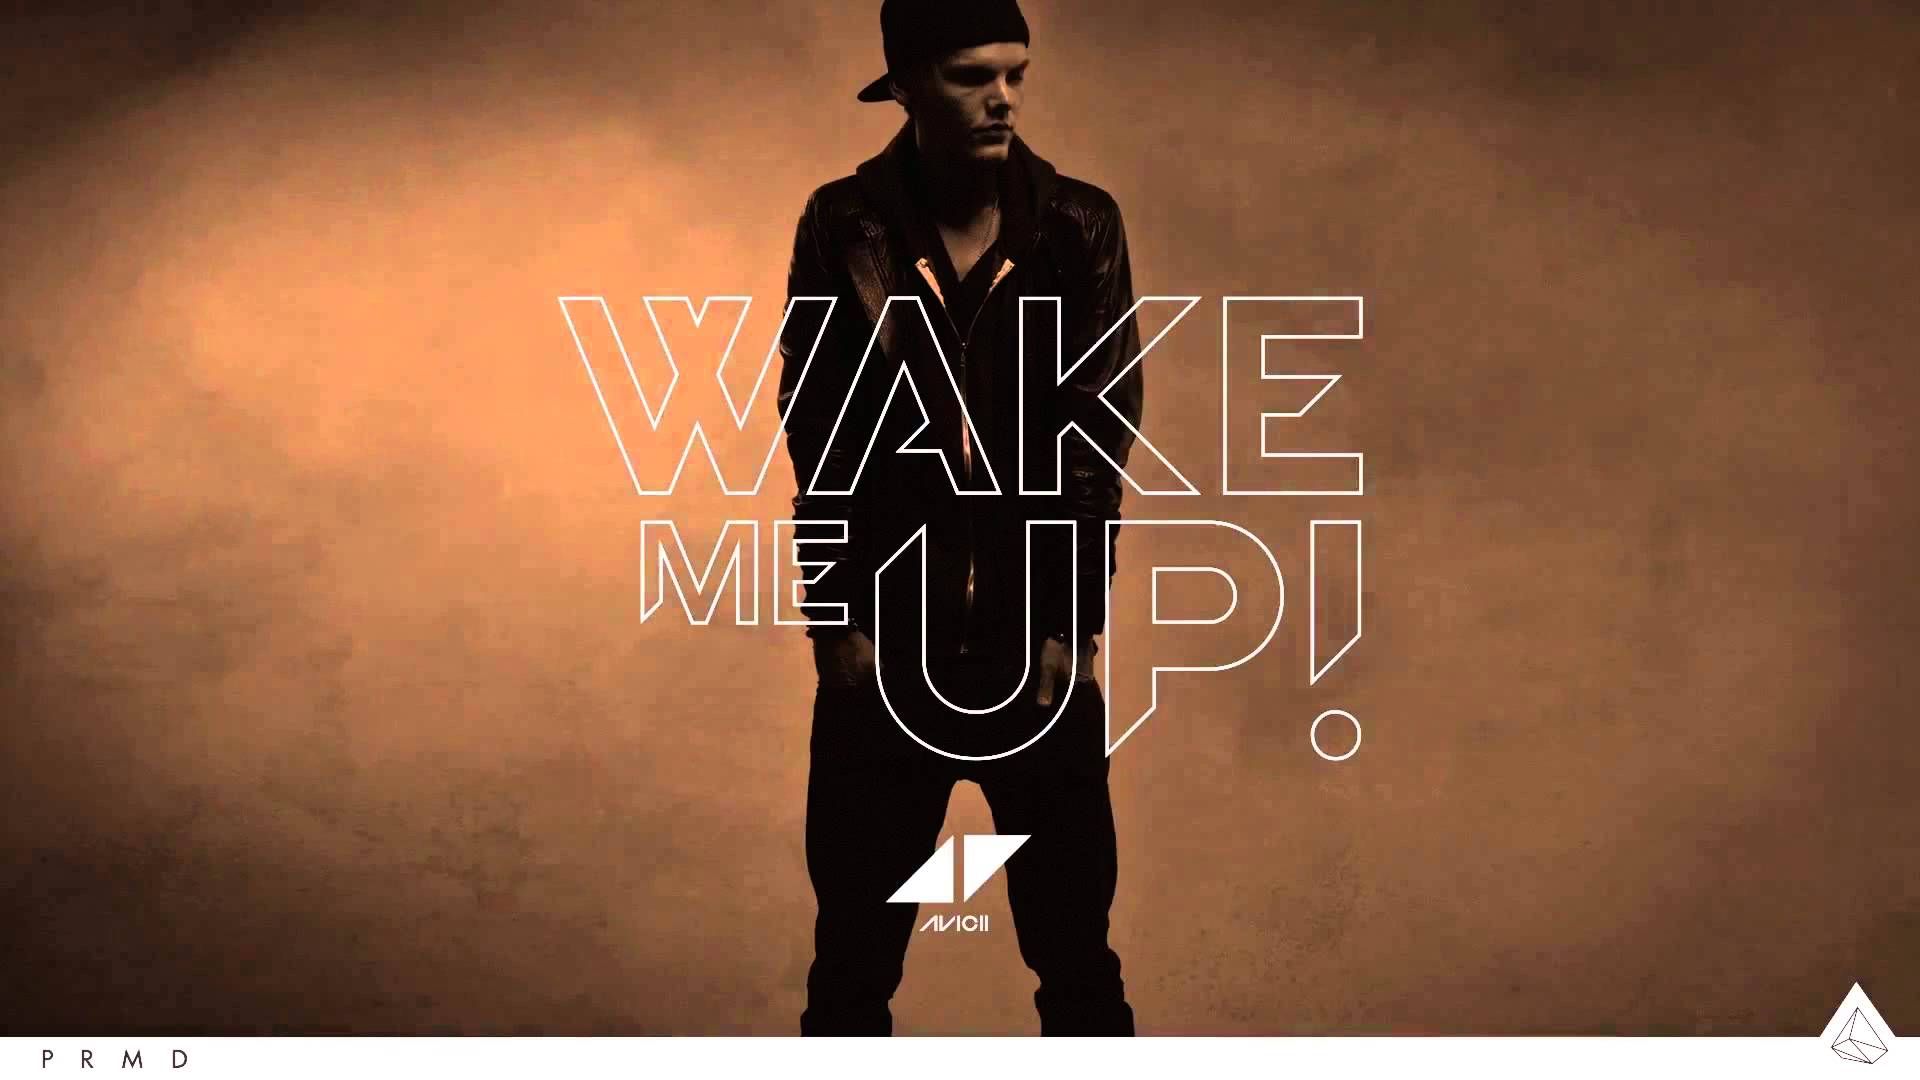 Avicii Wake Me Up HD Wallpaper. Avicii, Avicii wake me up, Wake me up